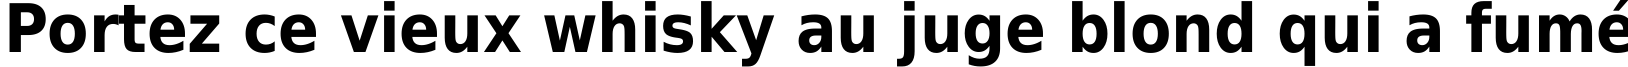 Пример написания шрифтом DejaVu Sans Condensed Bold текста на французском